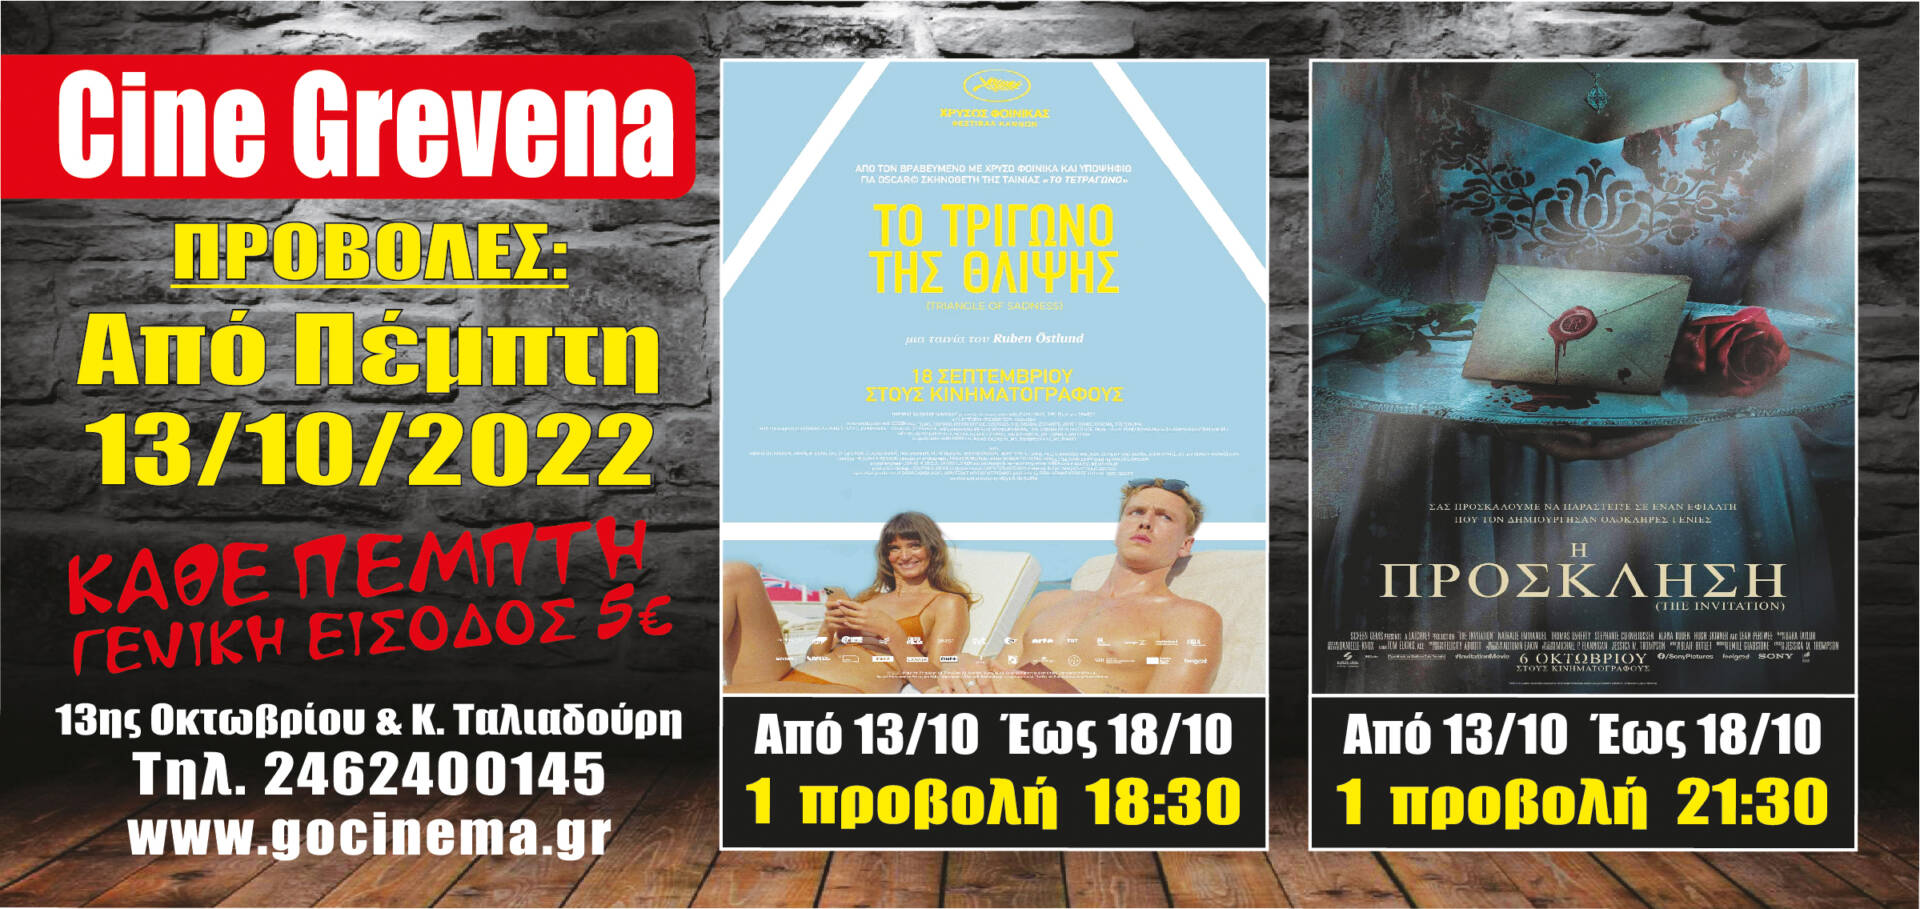 Νέα κινηματογραφική εβδομάδα από την  Πέμπτη 13 Οκτωβρίου έως Τετάρτη 19 Οκτωβρίου στο Cine Grevena